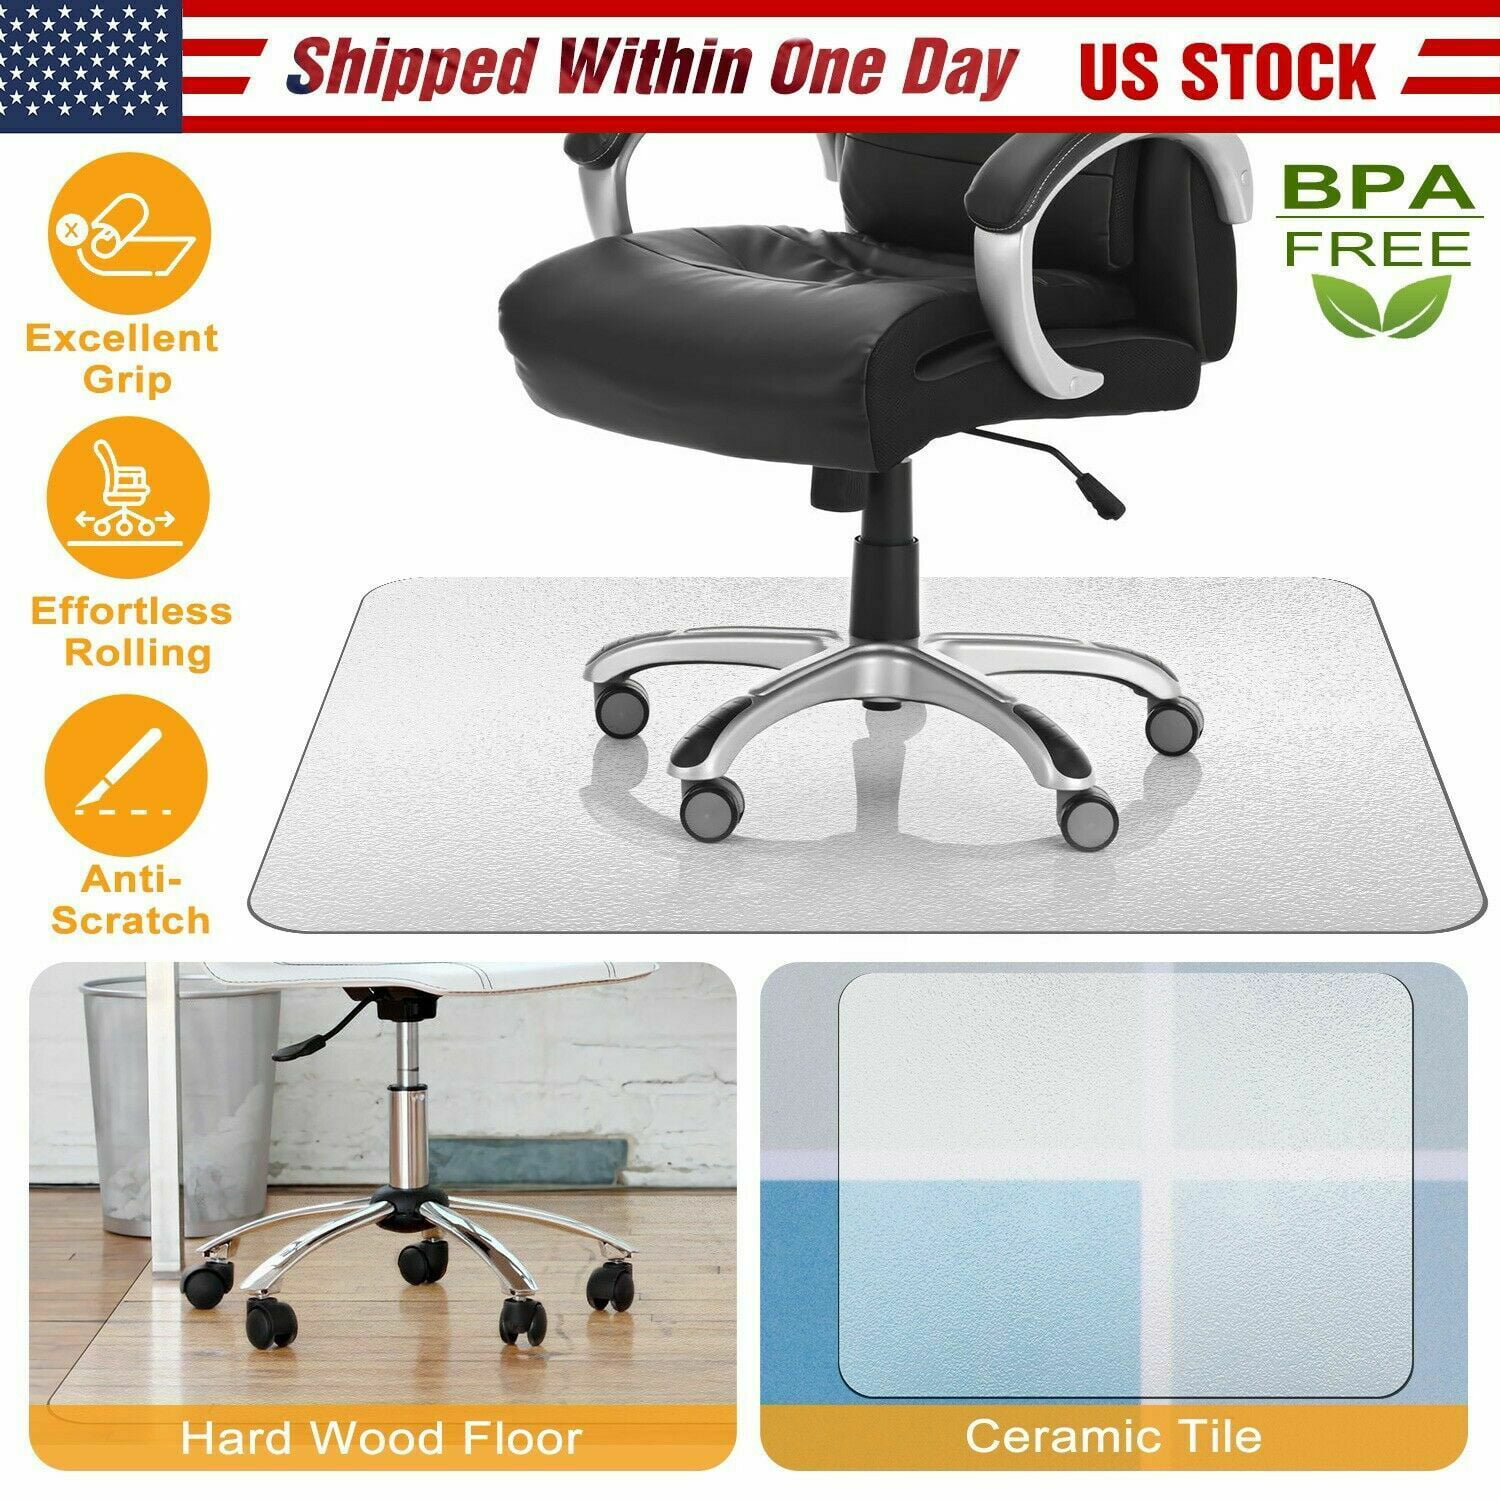 Chair Mat for Hard Wood Floors 36"x47" Heavy Duty Floor Protector Easy Clean US 